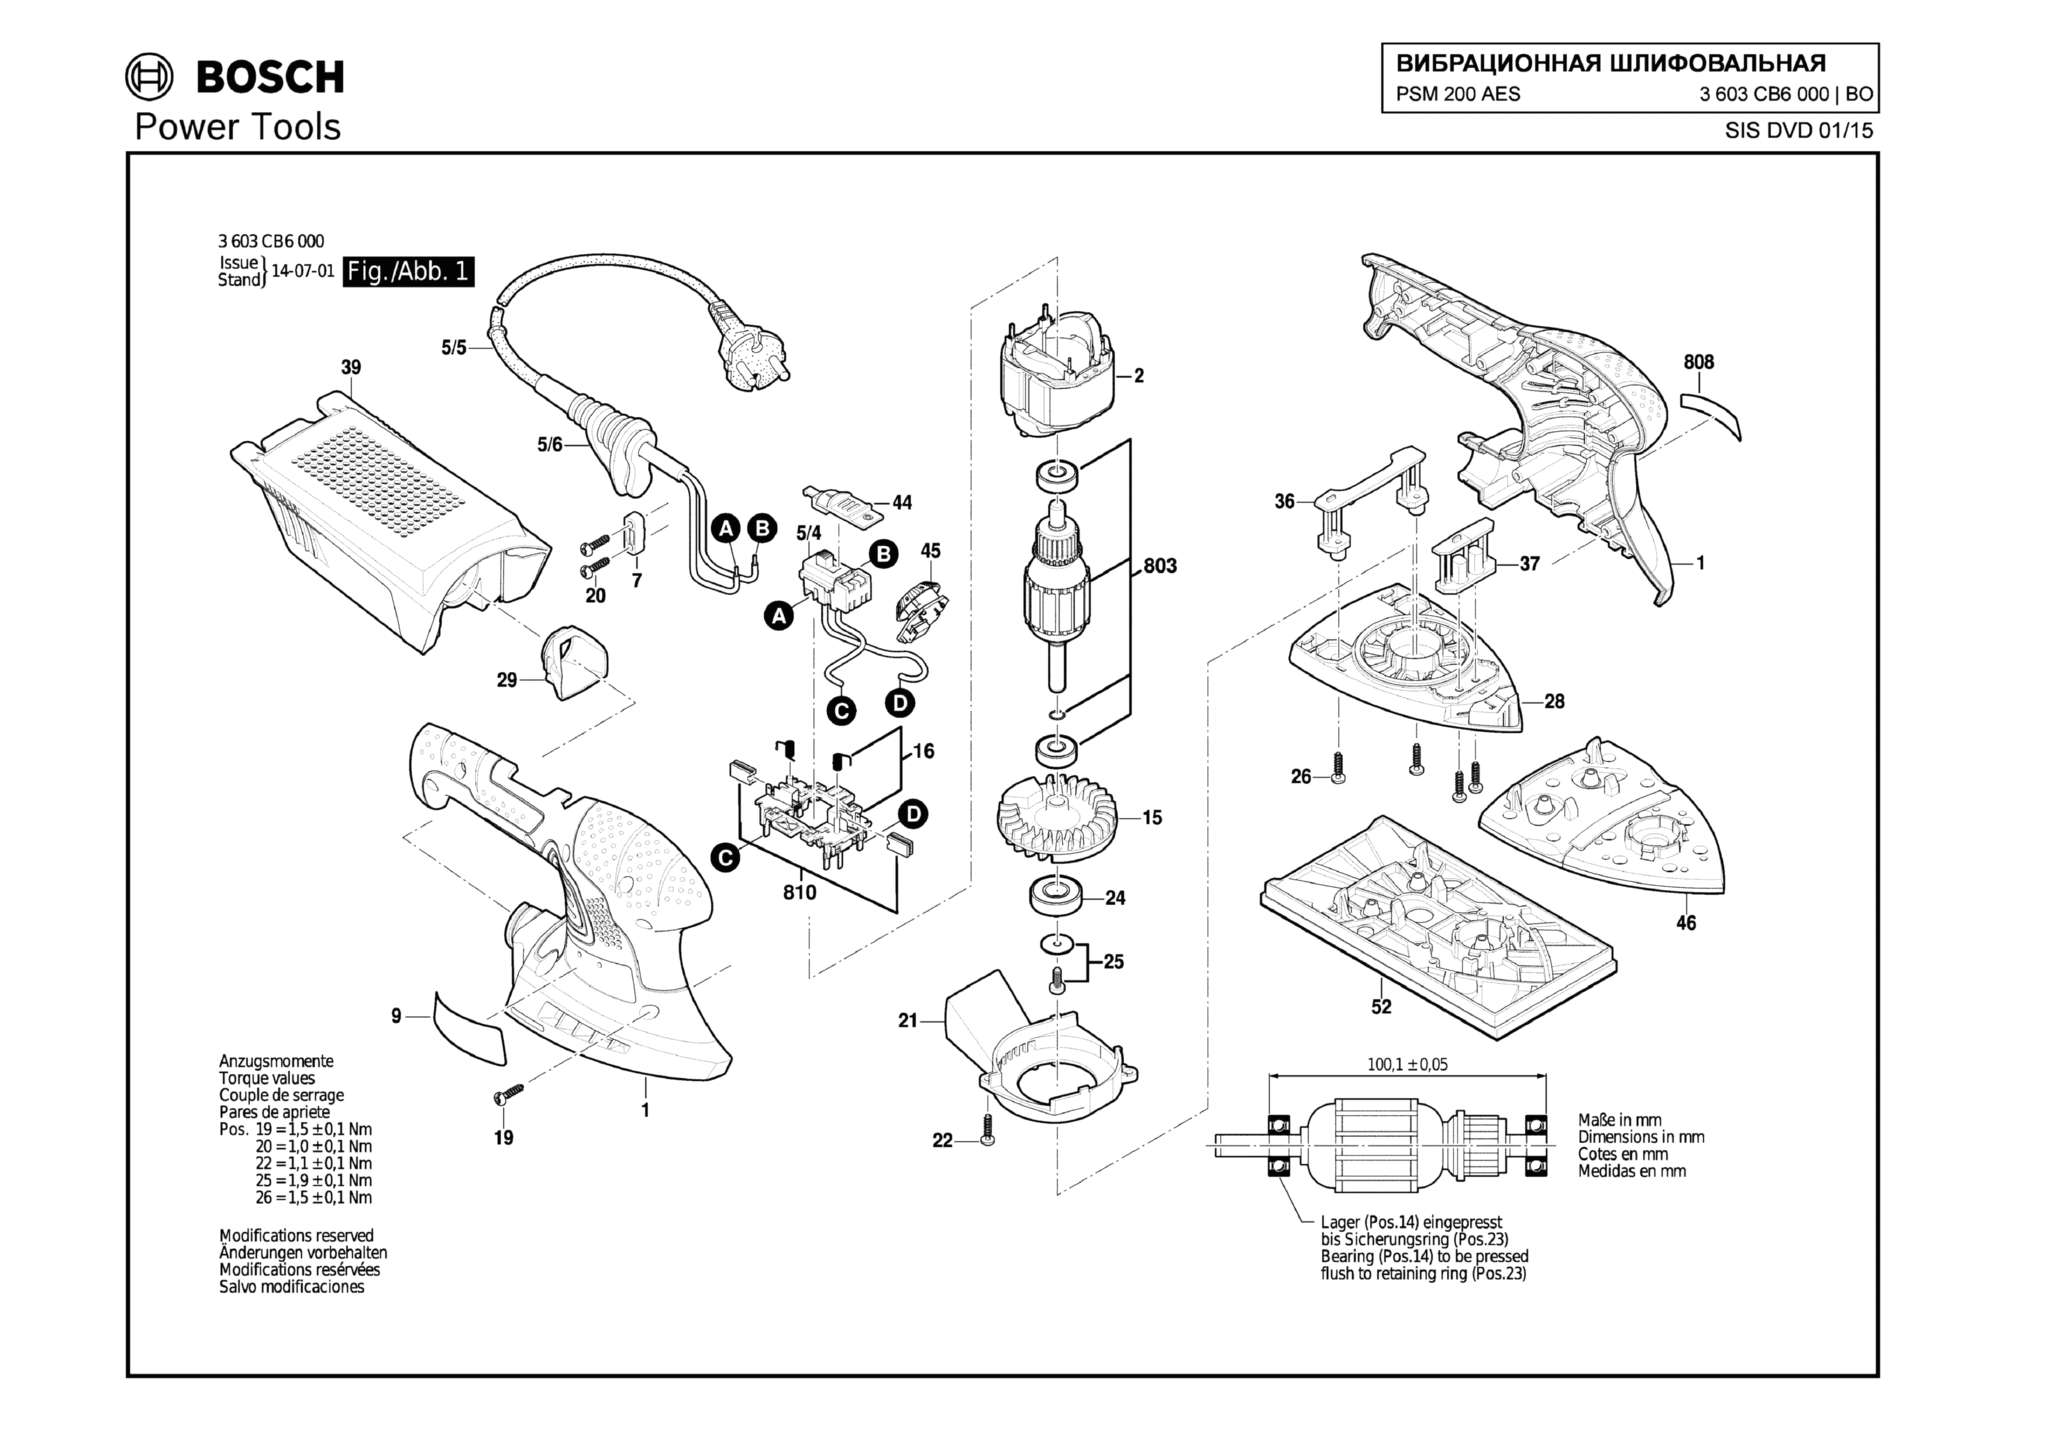 Запчасти, схема и деталировка Bosch PSM 200 AES (ТИП 3603CB6000)